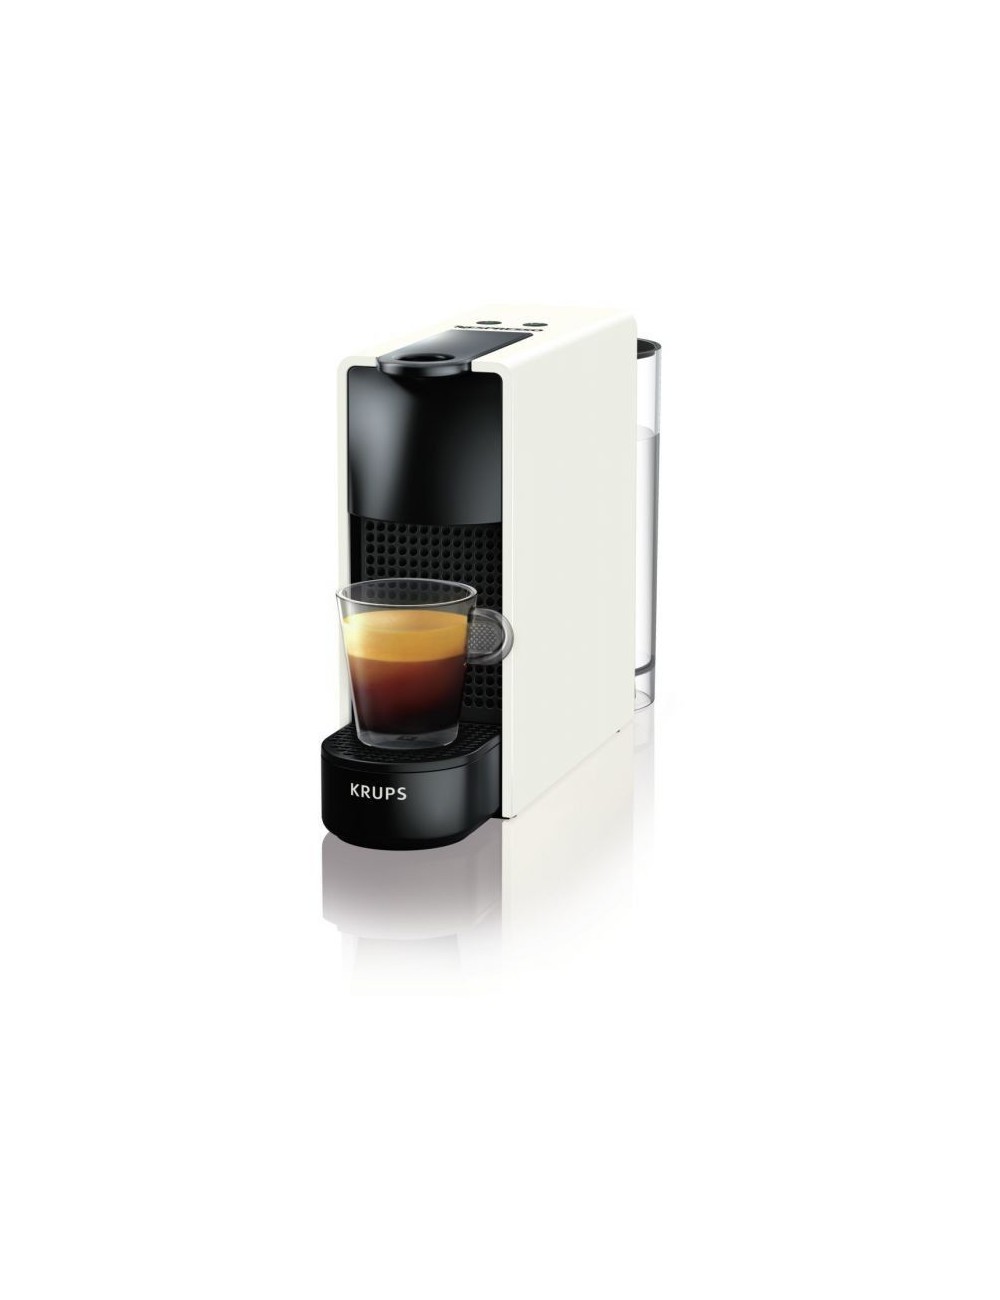 limpiar Industrial Asco Krups Essenza Mini XN110110 Manual Macchina per caffè a capsule 0,6 L